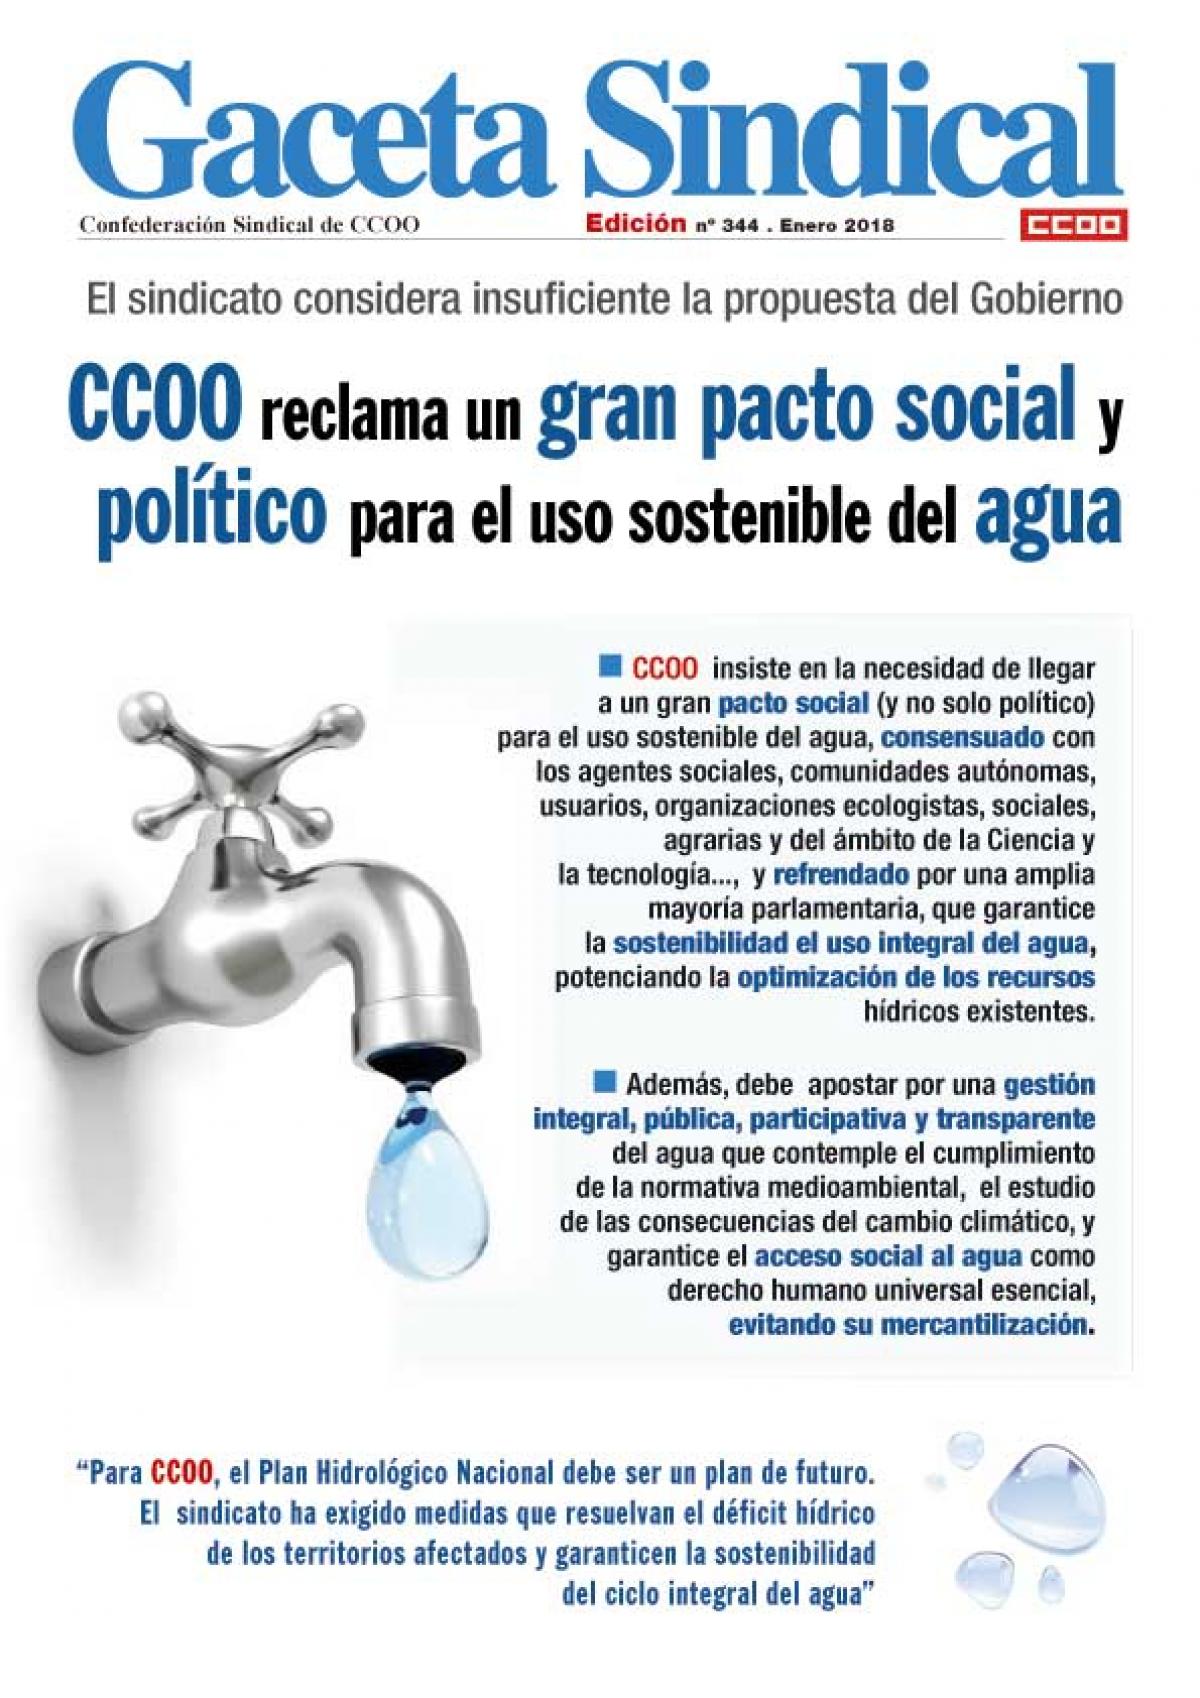 CCOO reclama un gran pacto social y poltico para el uso sostenible del agua